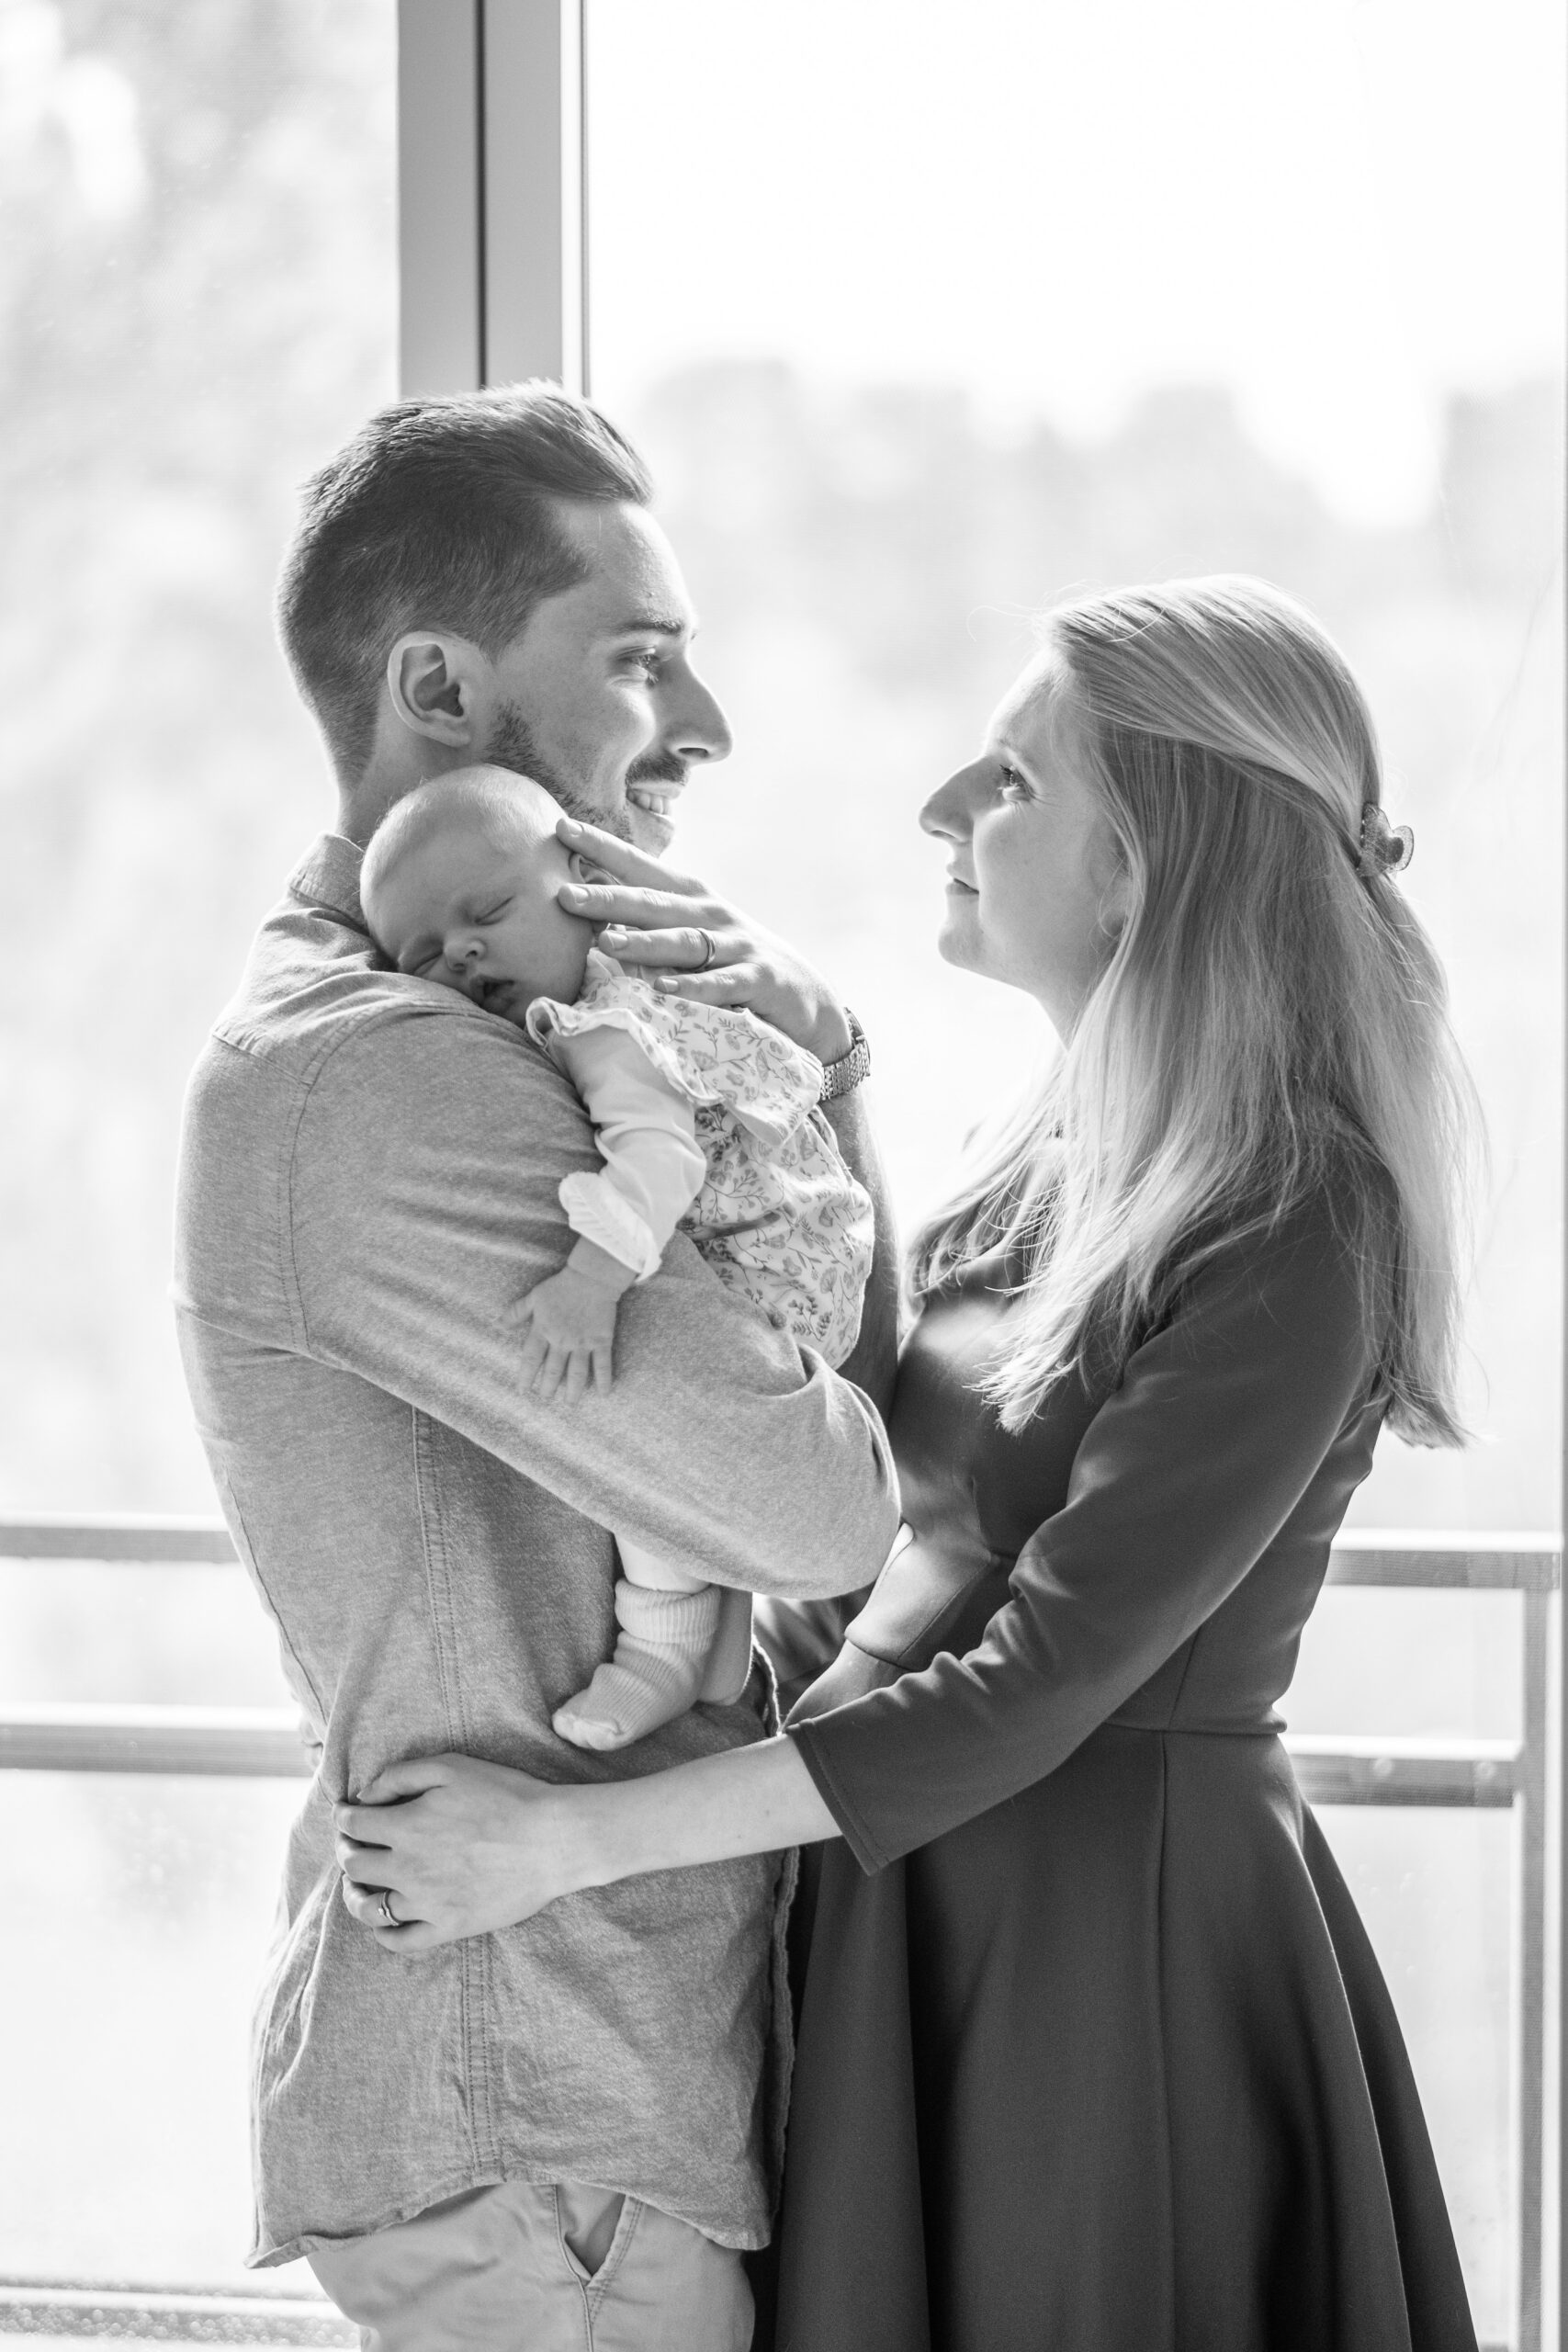 Un homme tient son nouveau né contre lui, et une femme qui se tient devant lui le regarde en souriant, la photo est en noir et blanc